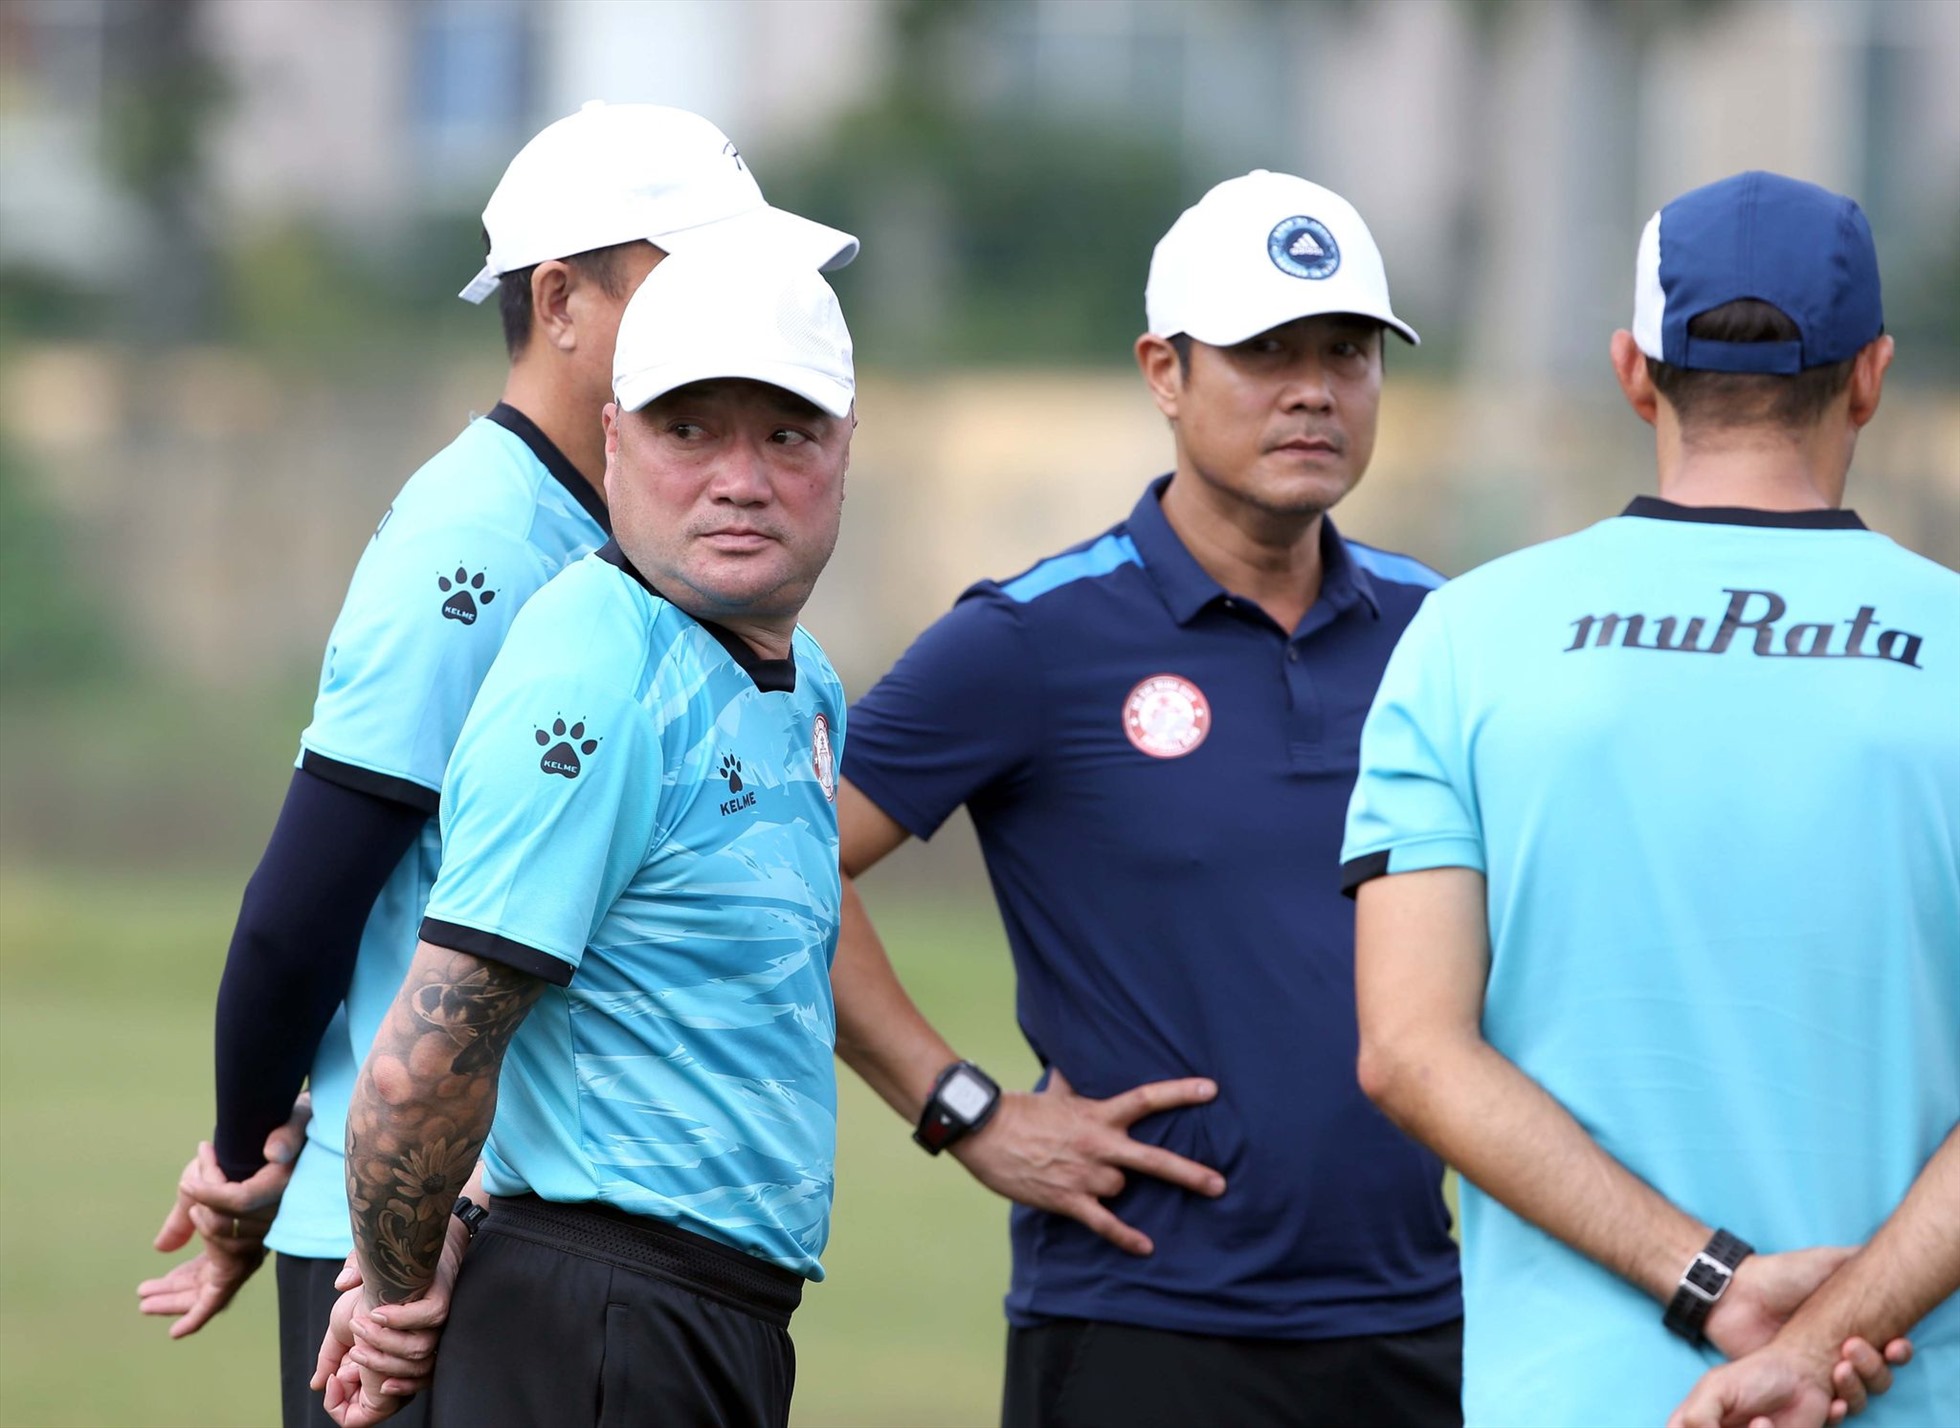 Sau khi hoàn tất mọi thủ tục ký kết hợp đồng, huấn luyện viên trưởng Trương Việt Hoàng đã có buổi tập đầu tiên cùng câu lạc bộ TPHCM trong sáng 23.8. Đây cũng là buổi tập chuẩn bị cho trận gặp Hải Phòng ở vòng 14 Night Wolf V.League 2022.